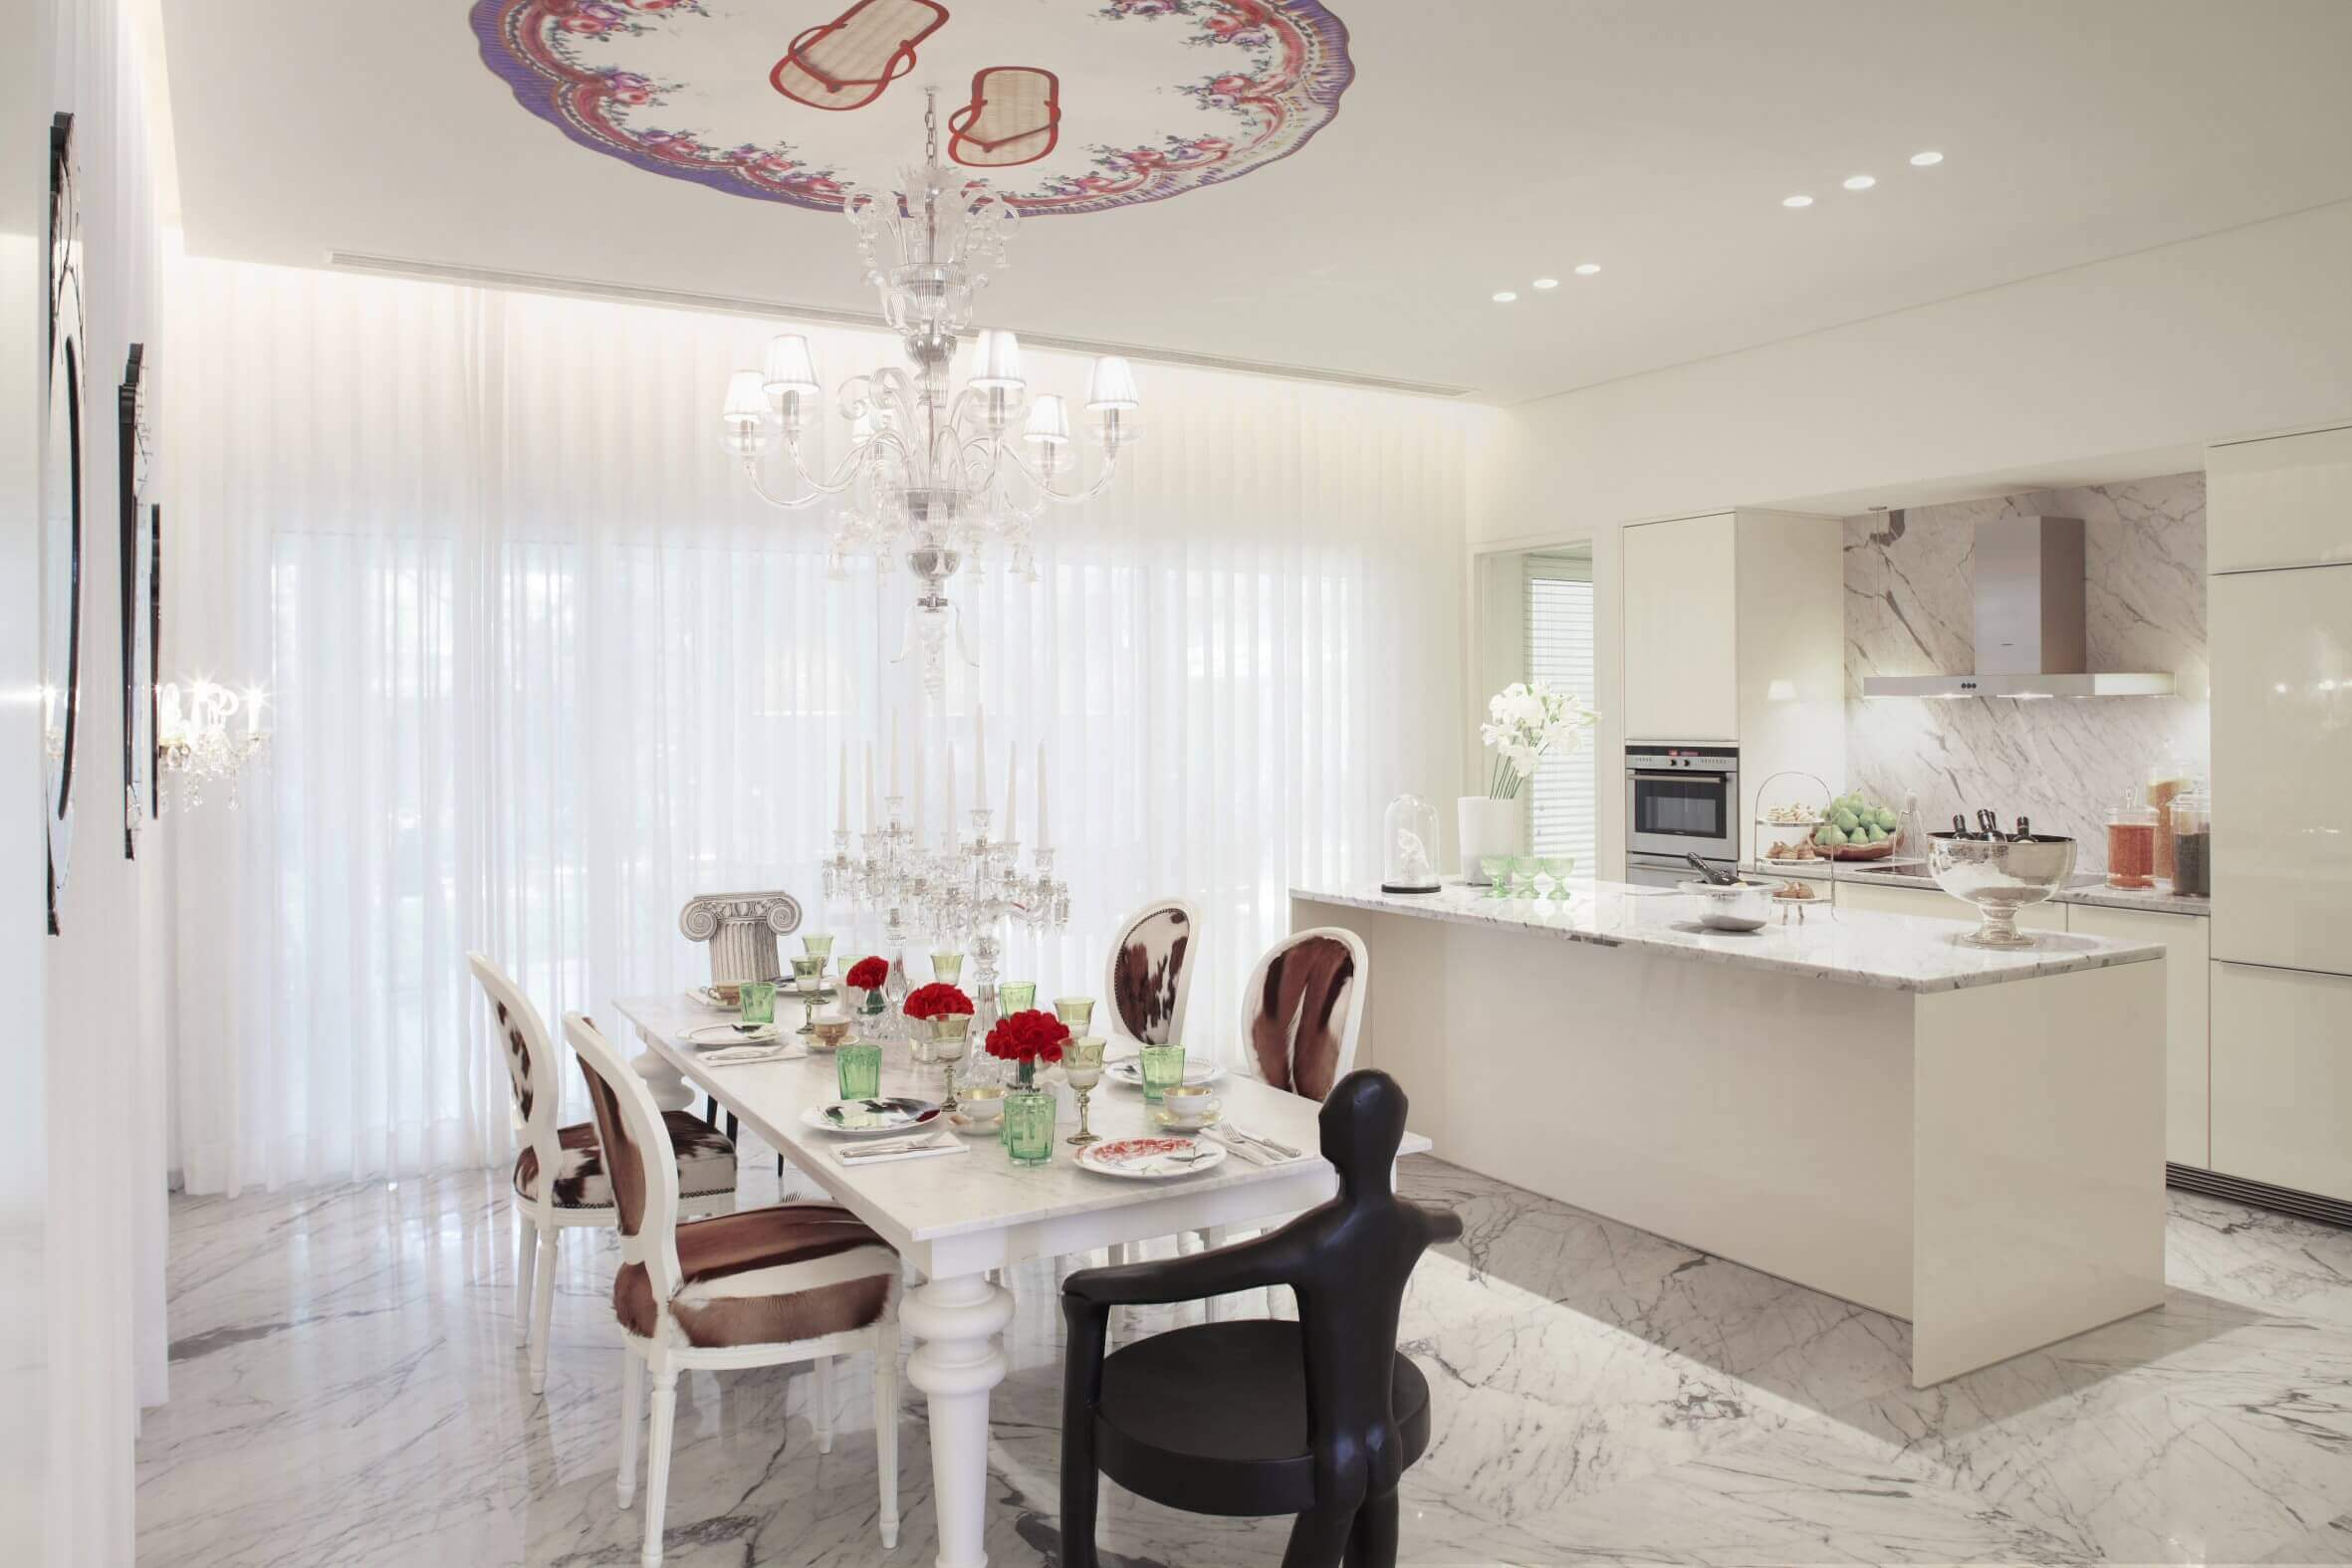 Luxury Kitchen Table Sets